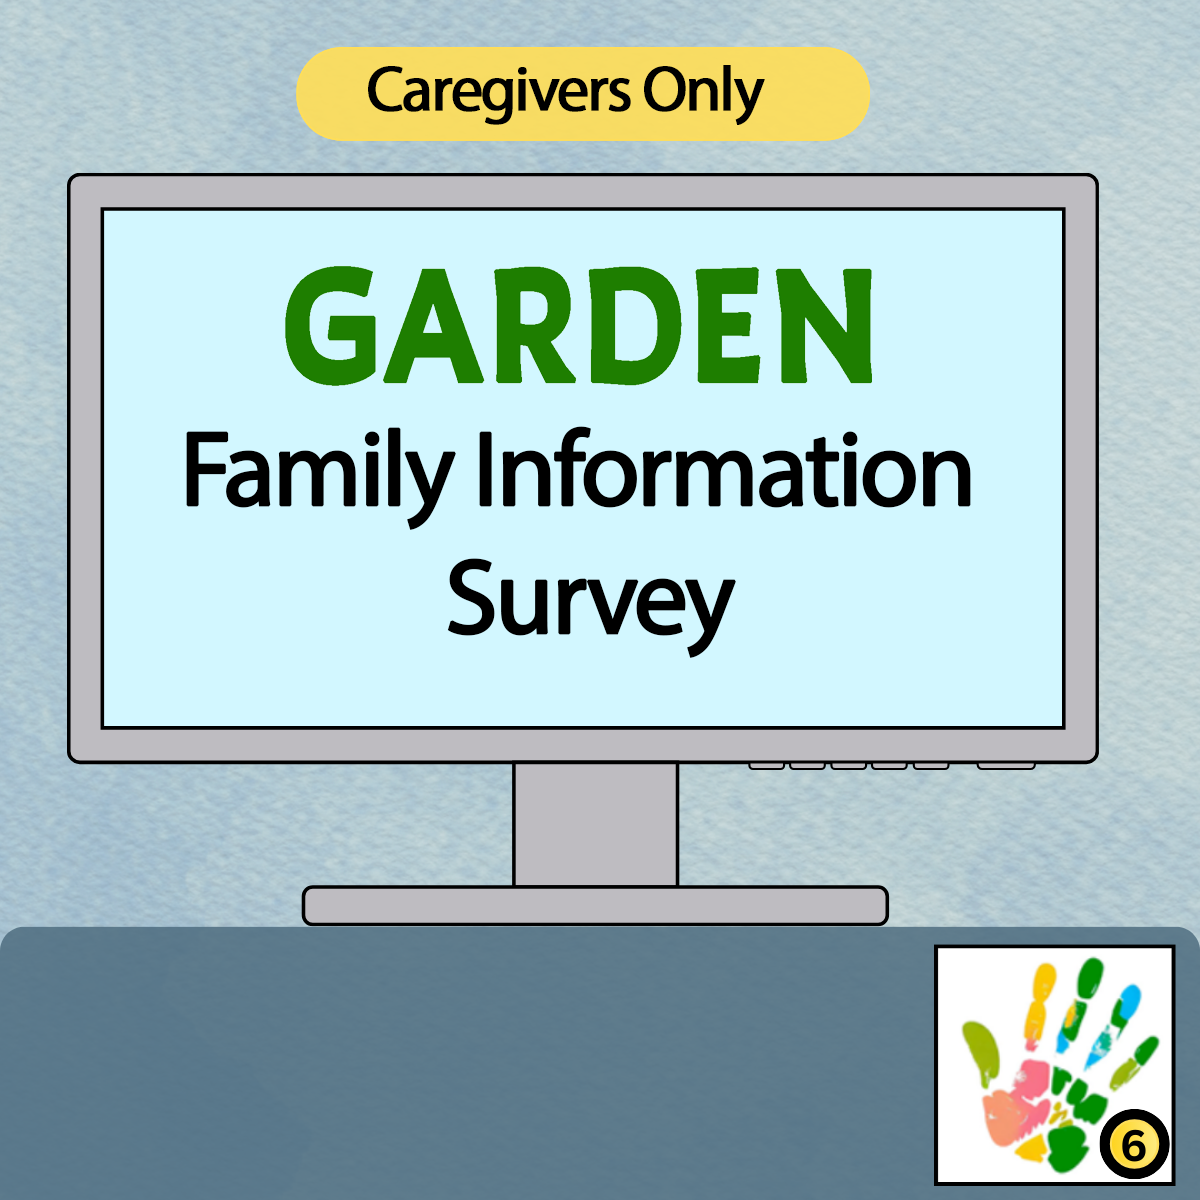 GARDEN Family Information Survey